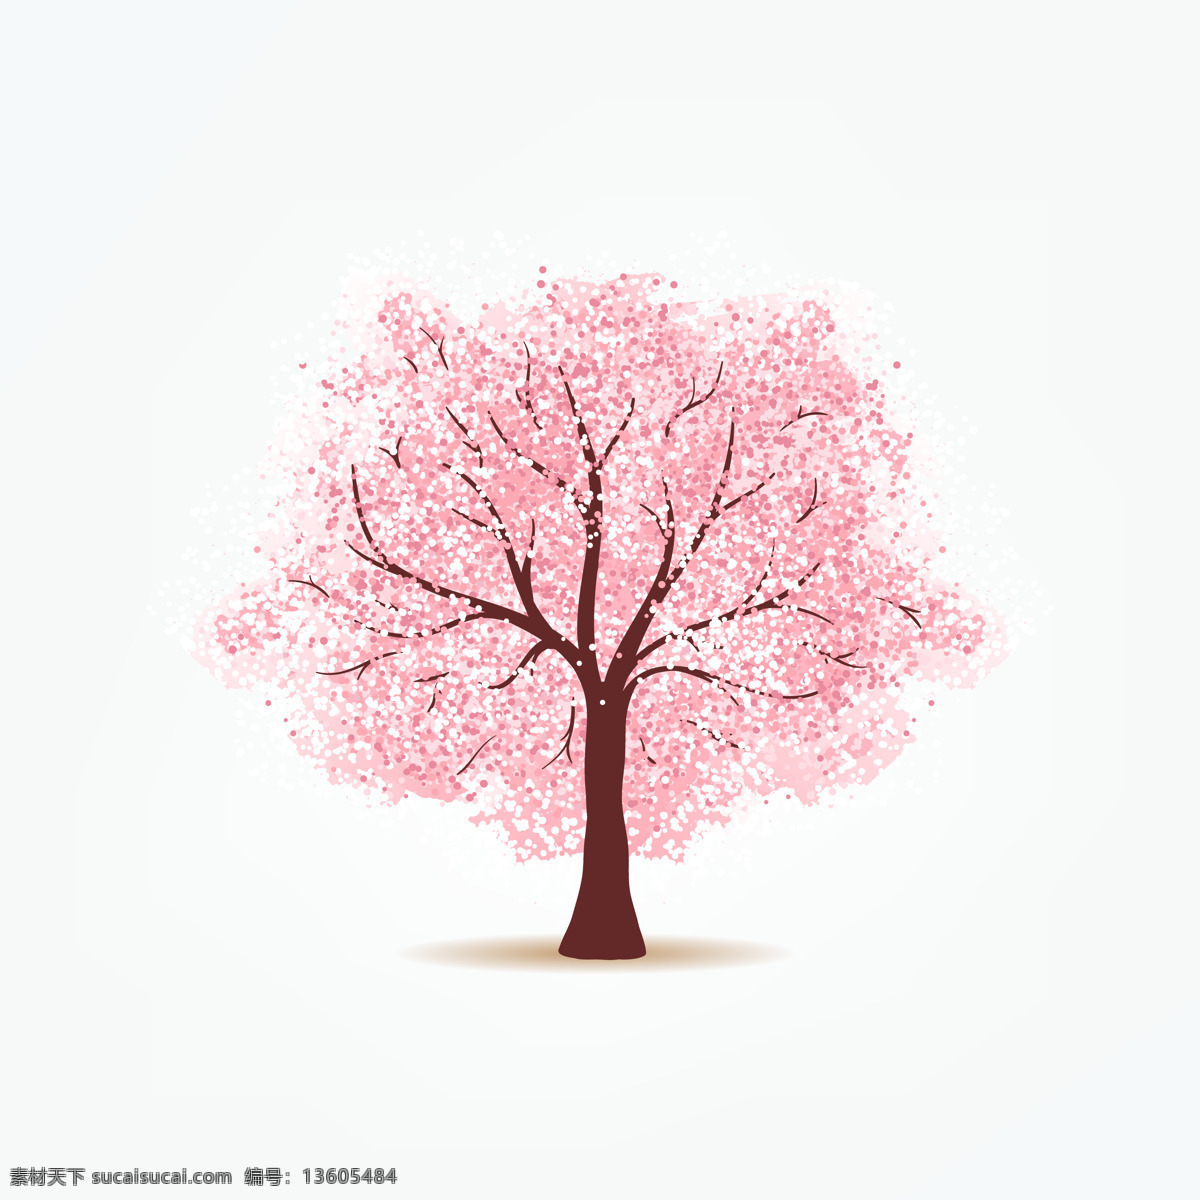 粉色樱花树 粉红 樱花树 单棵 桃花 梅树 文化艺术 节日庆祝